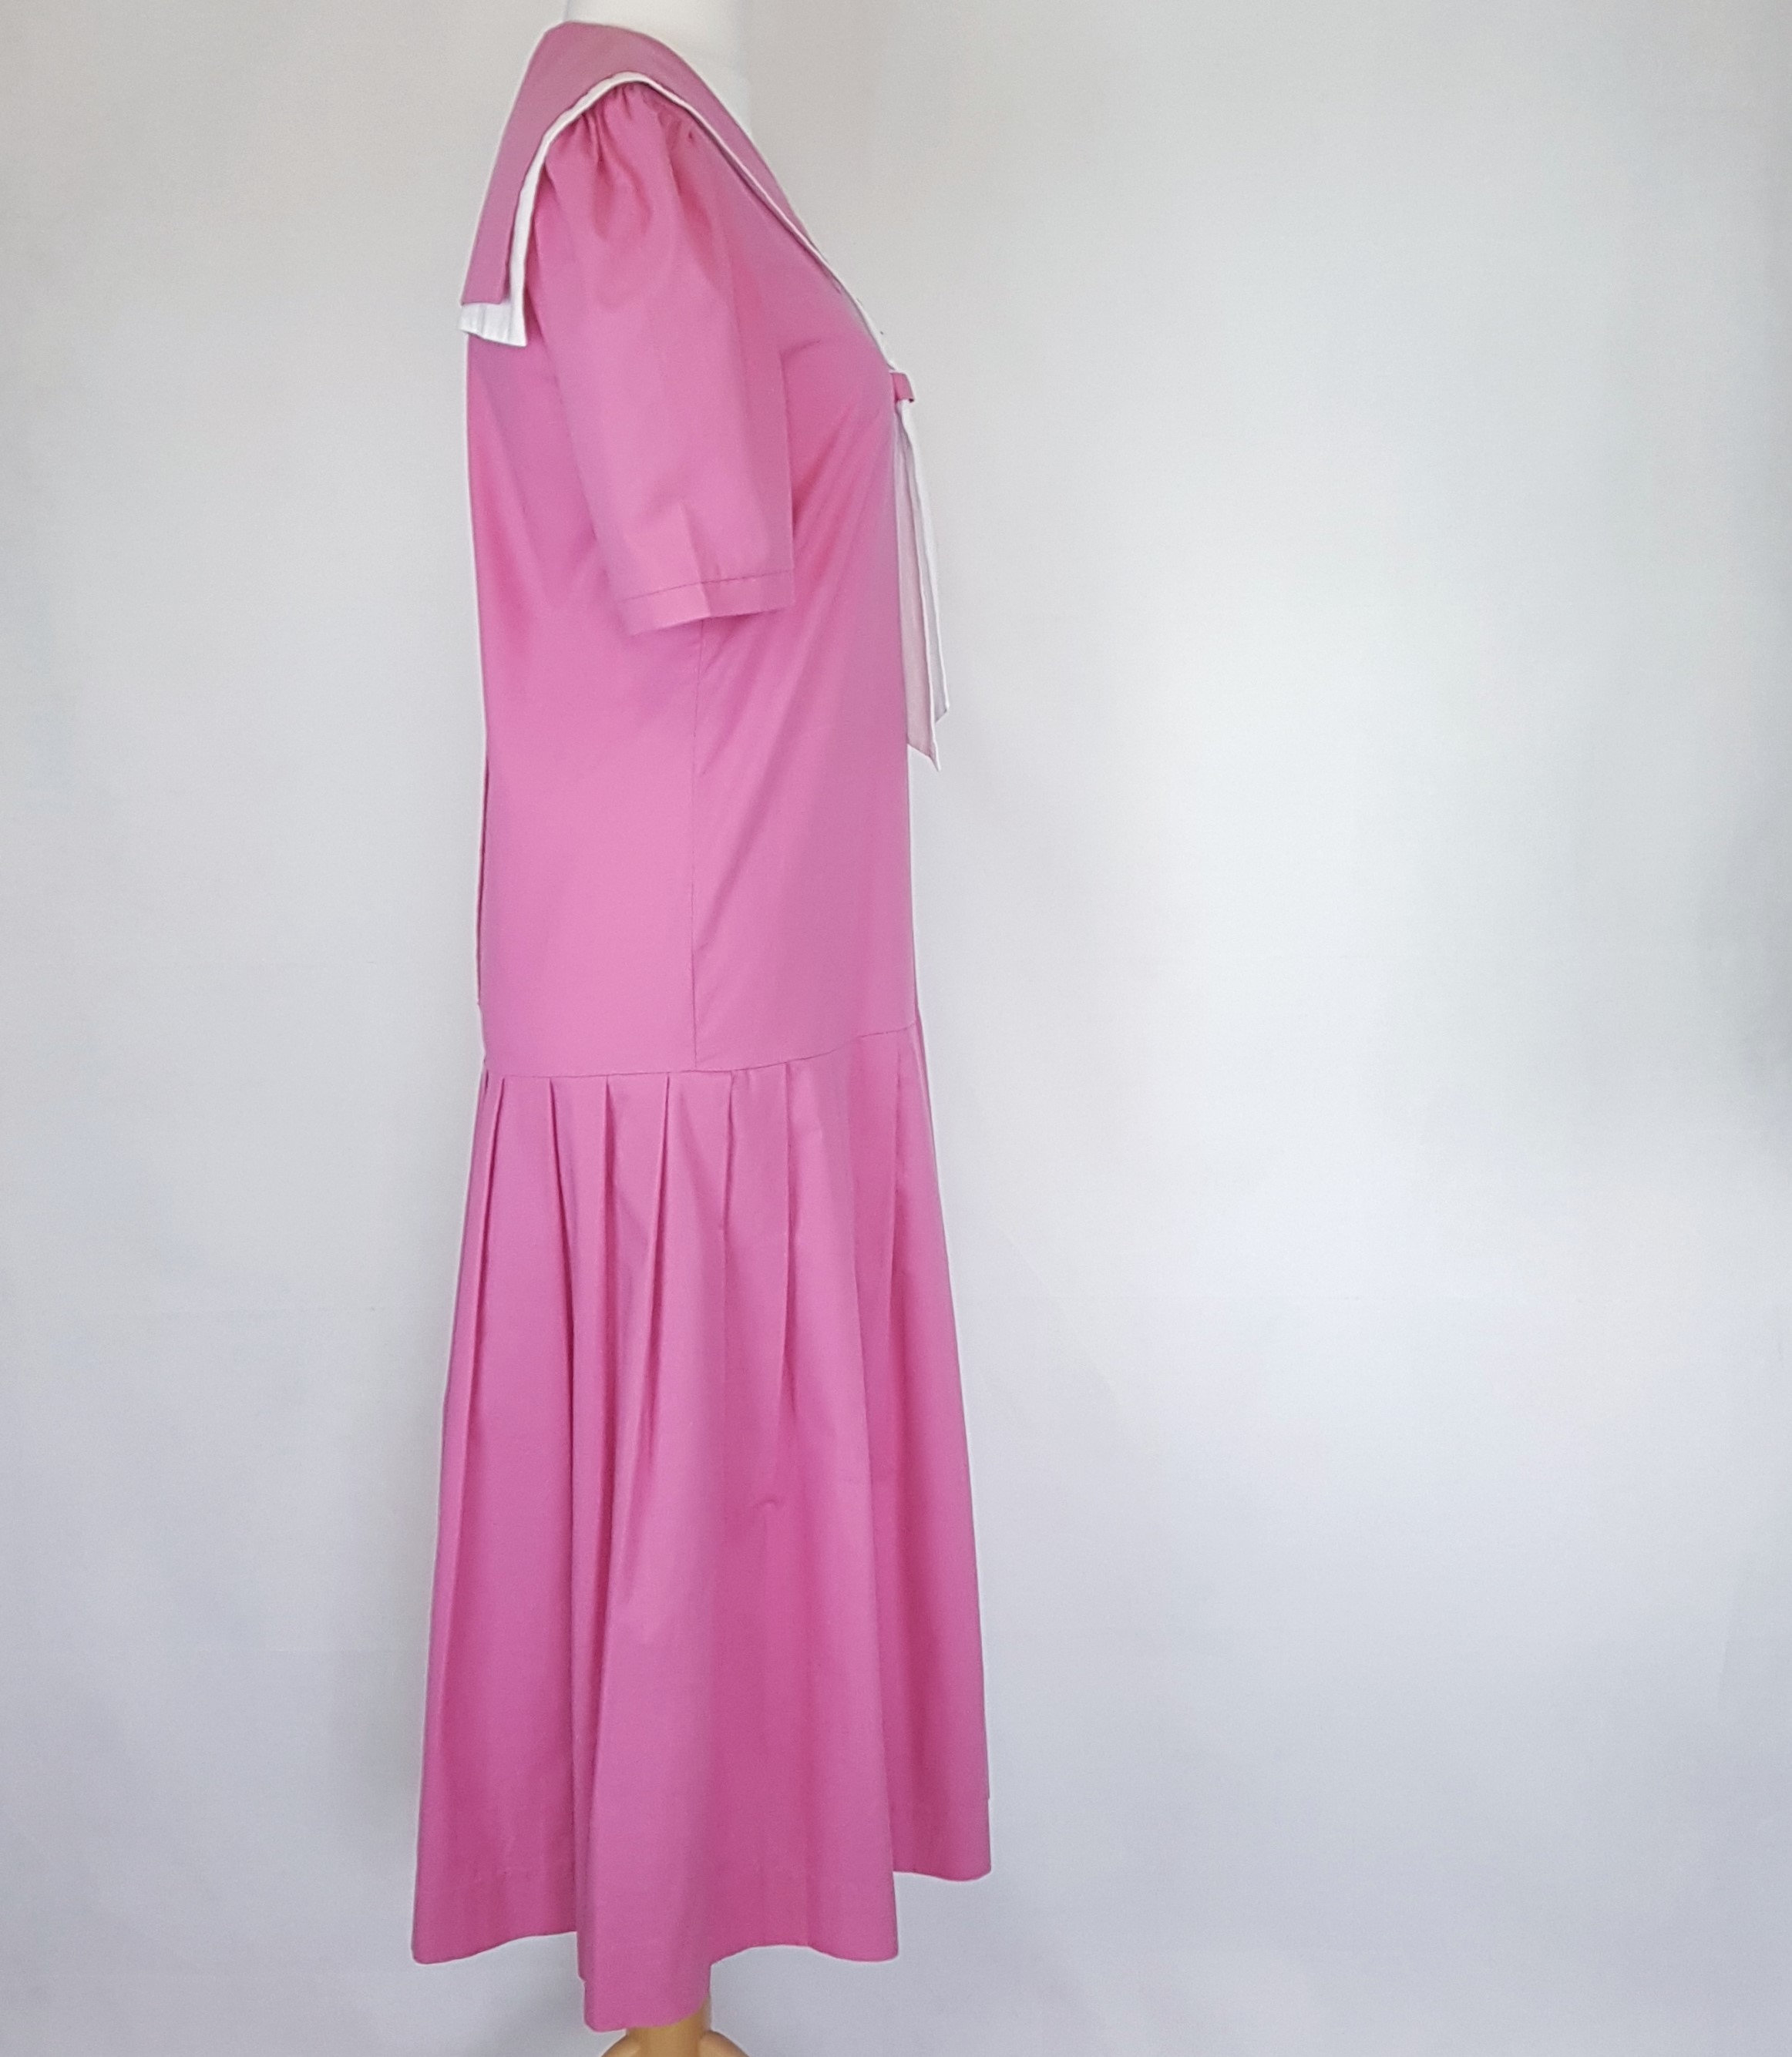 Laura Ashley Size UK 12 Pink White Dropped Waist Dress With - Etsy UK